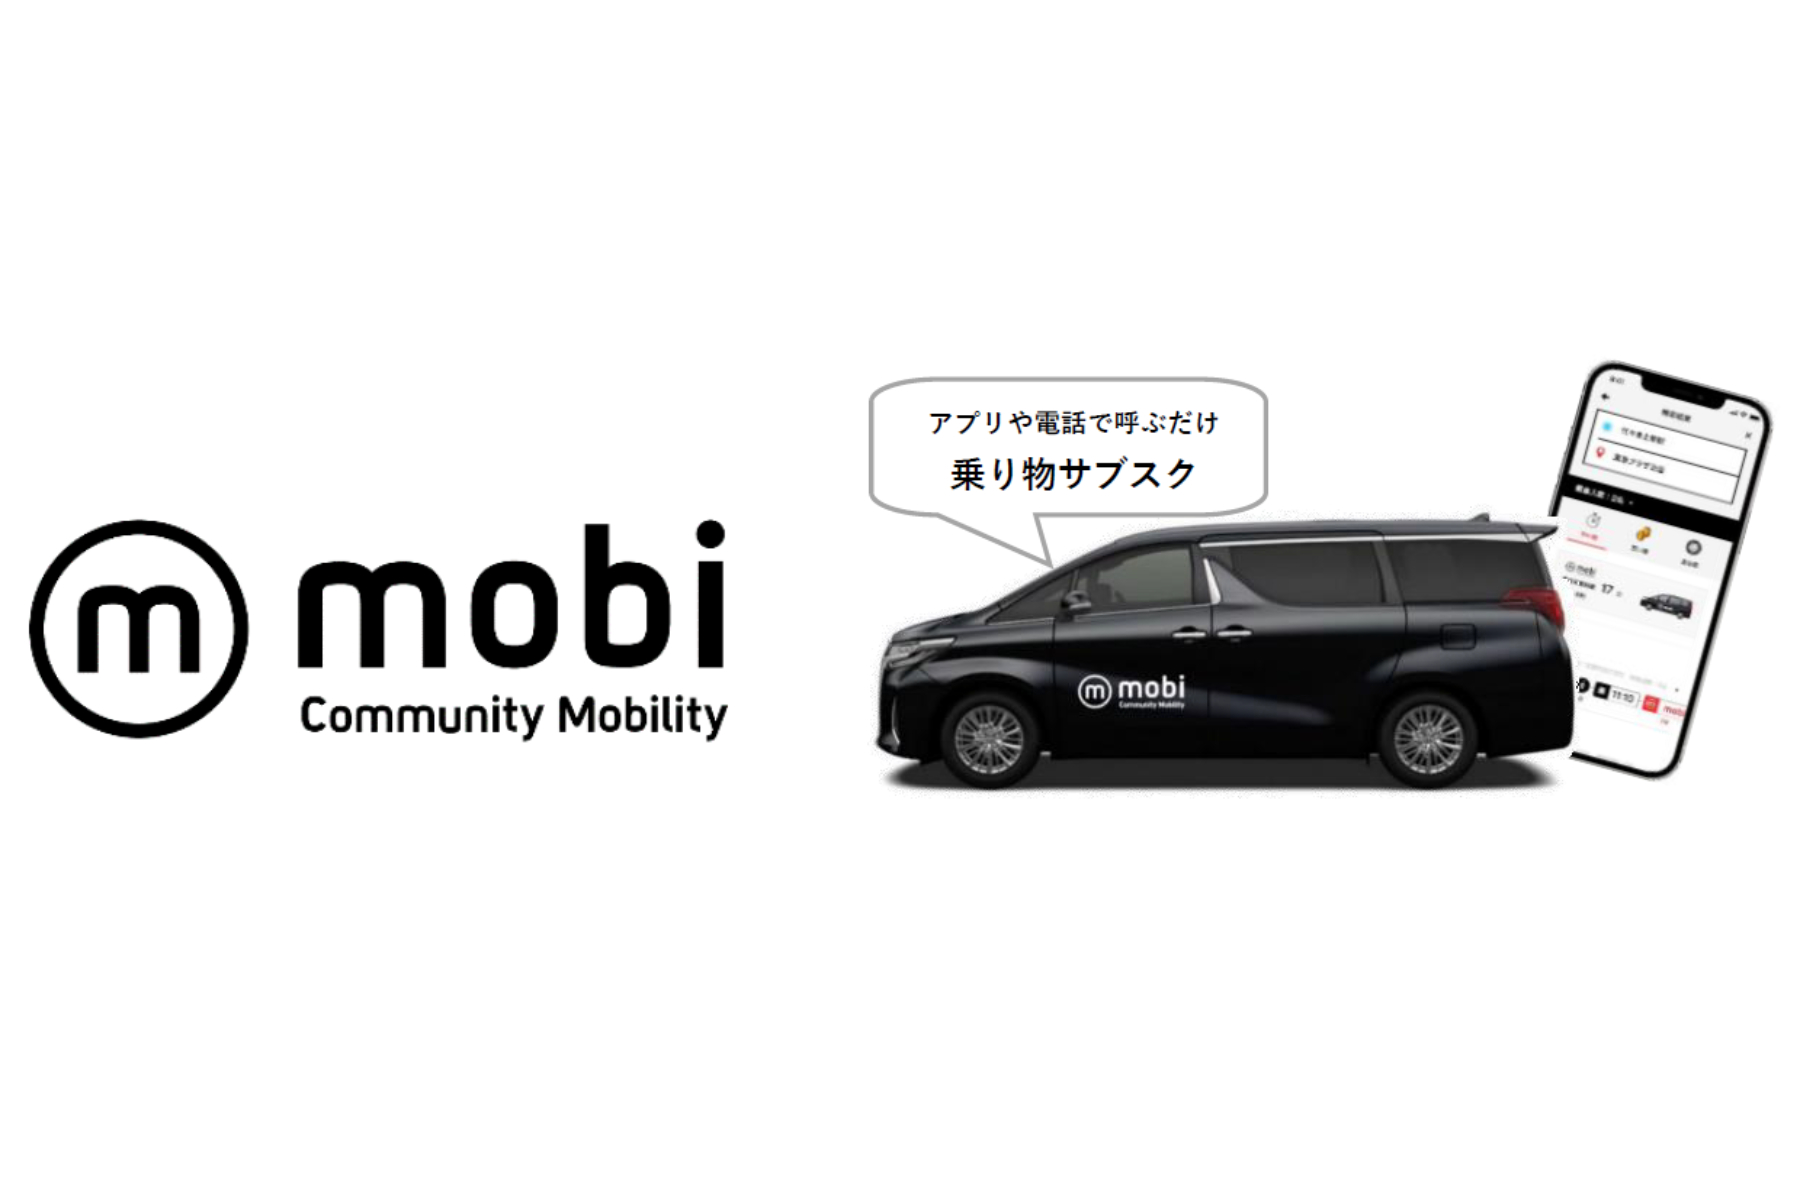 愛媛県松野町、「mobi」でオンデマンド交通の実証運行を開始[ニュース]